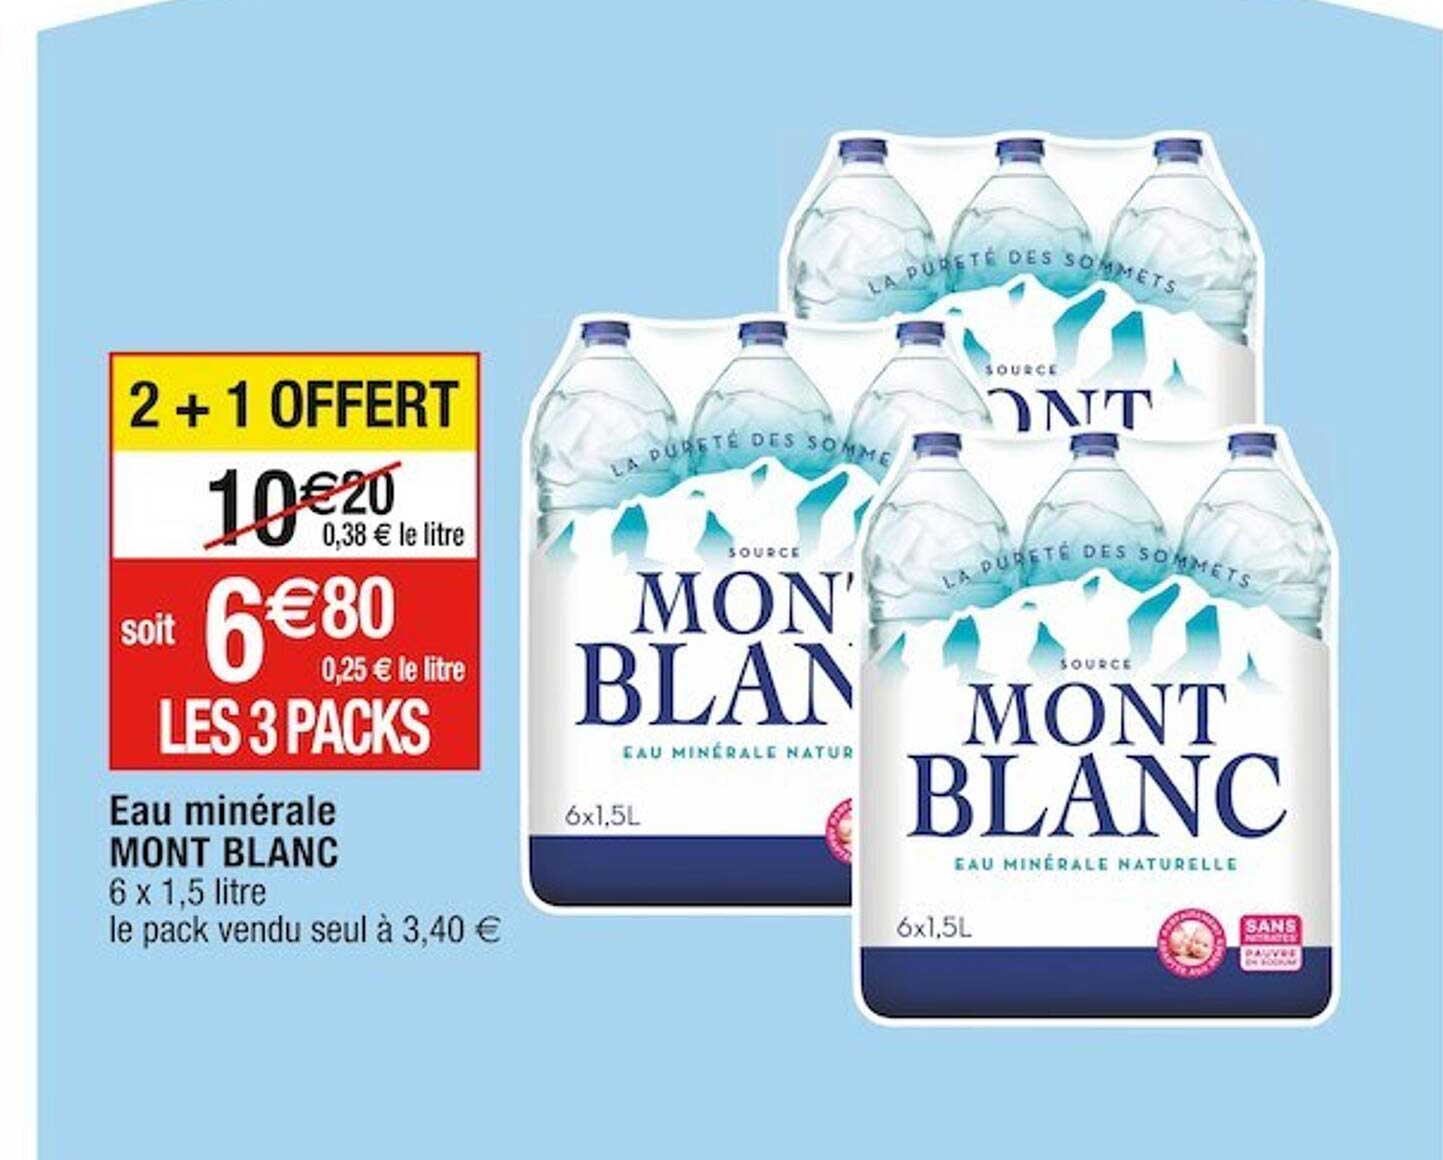 Promo Eau Minérale Mont Blanc chez Cora - iCatalogue.fr